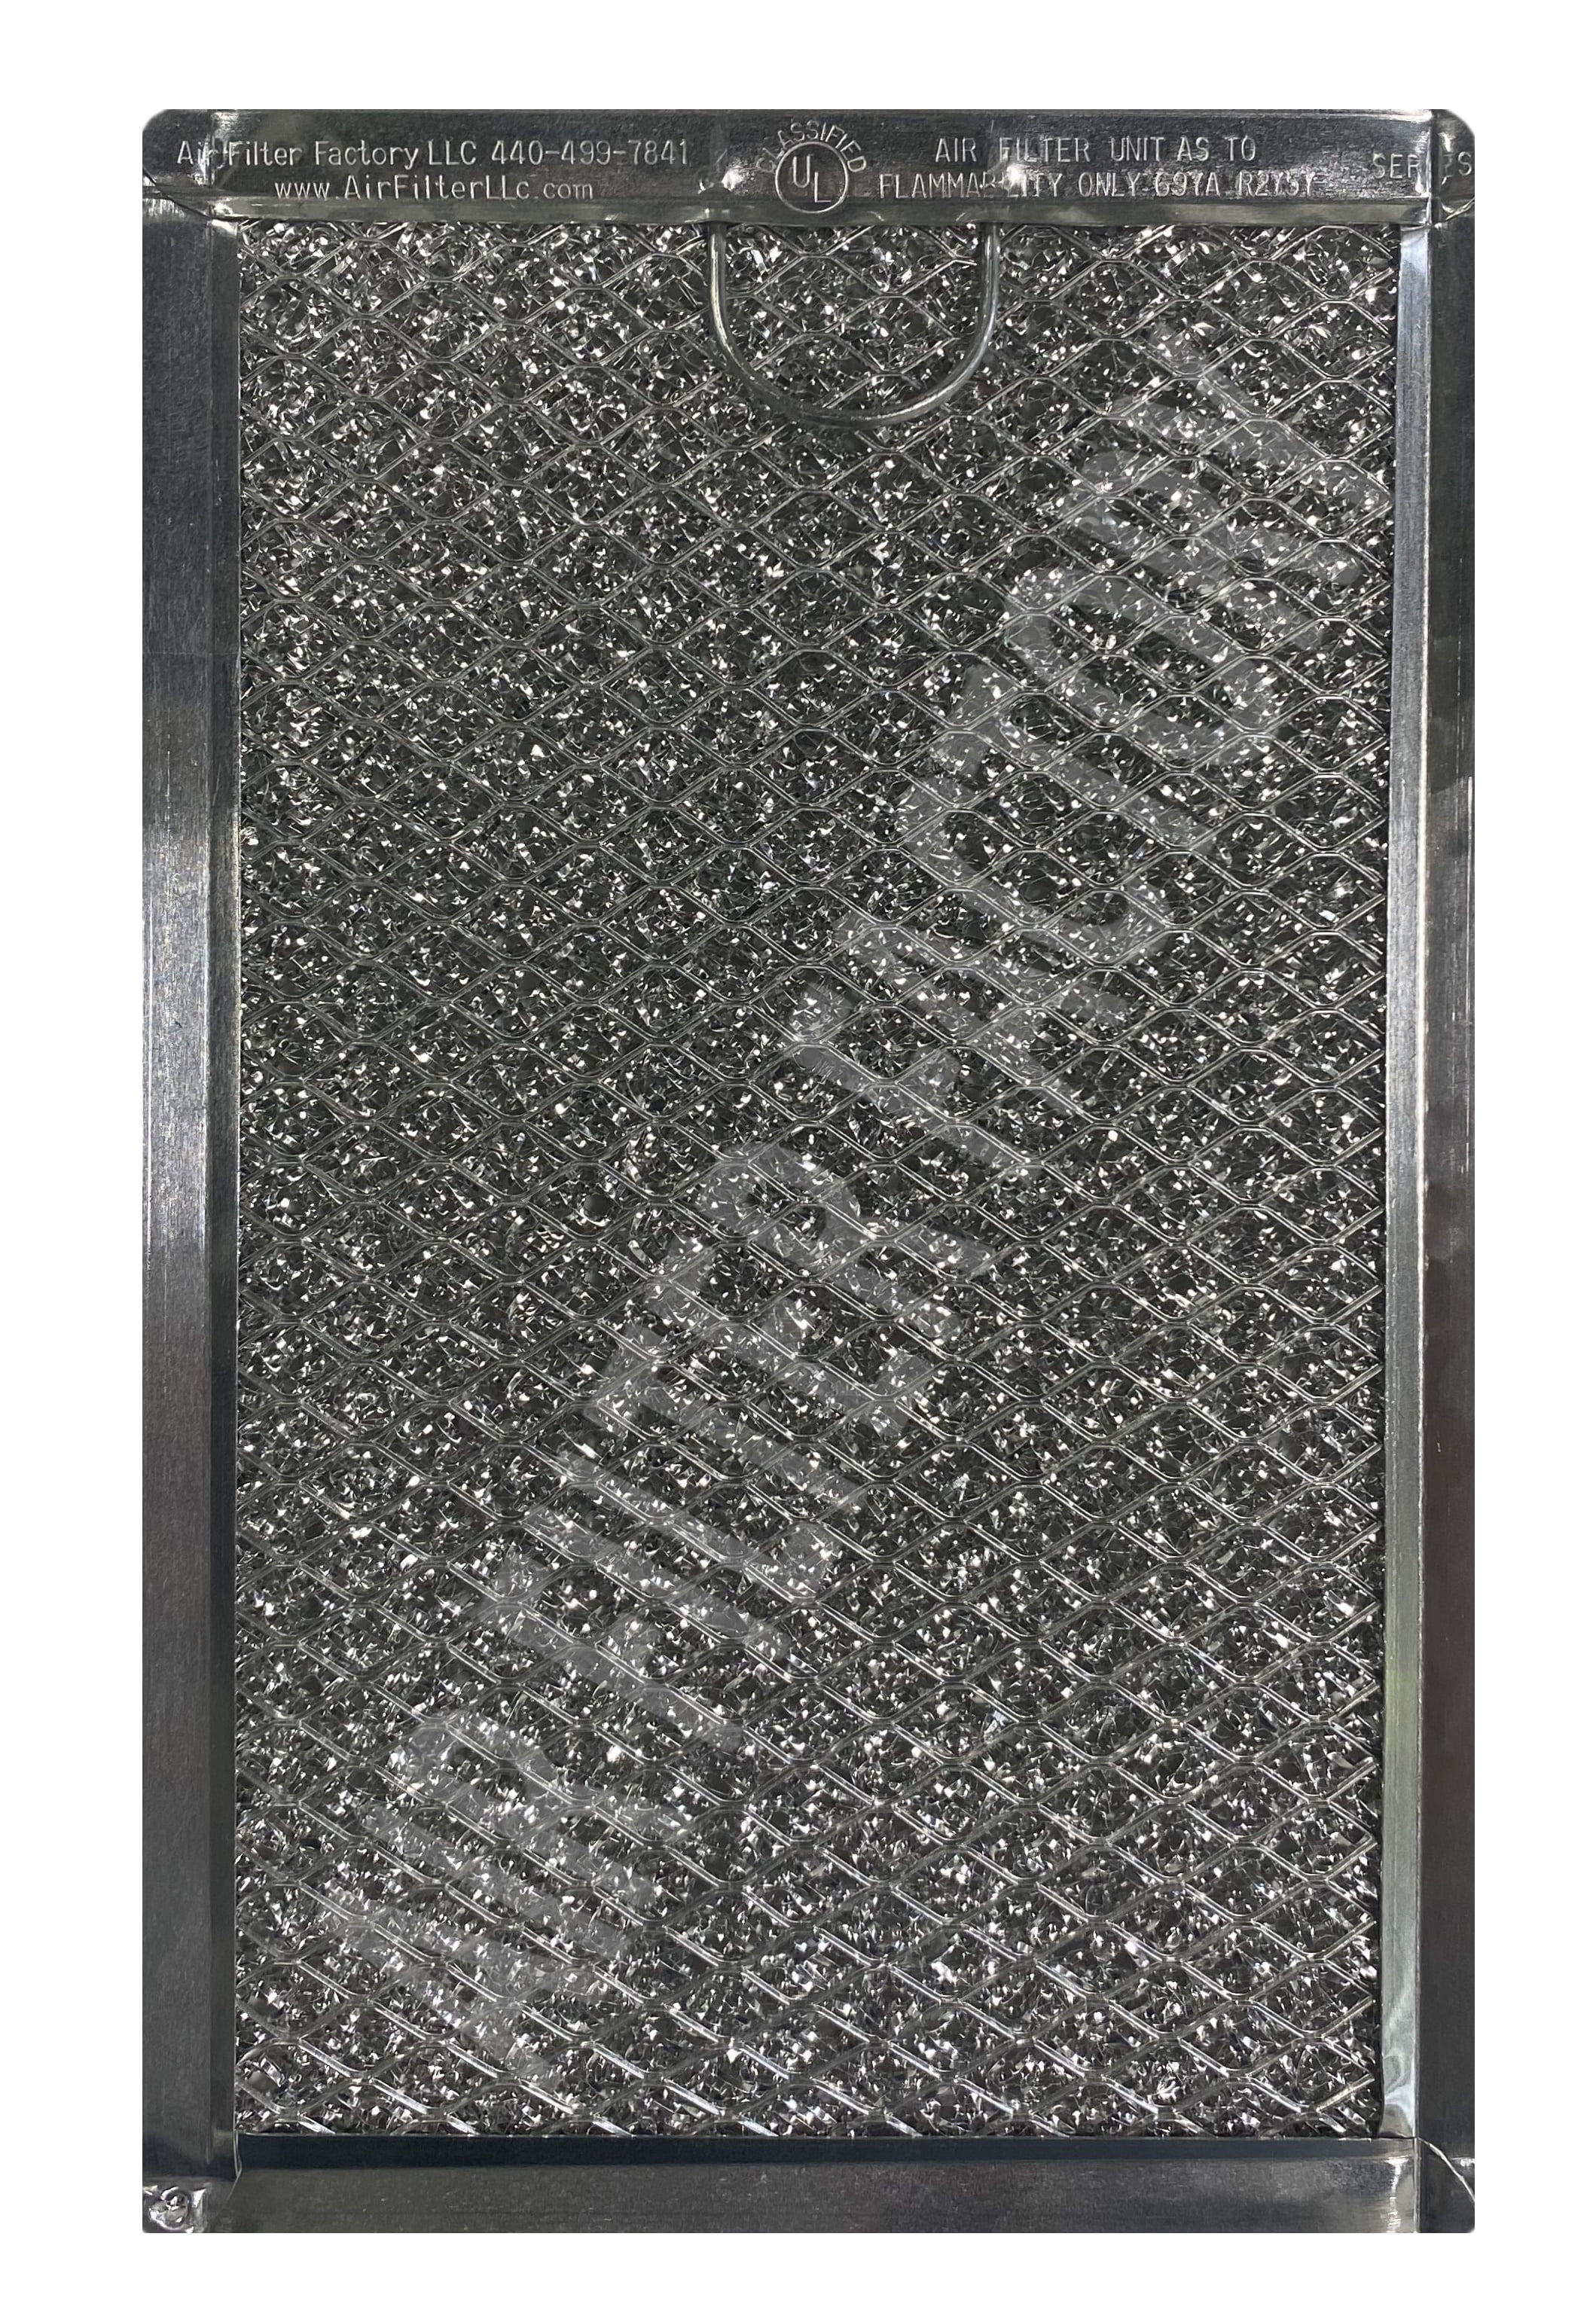 2-PACK American Metal Filter RHF0525 Microwave Filters 5-7/8" x 13-3/8" x 3/32" 